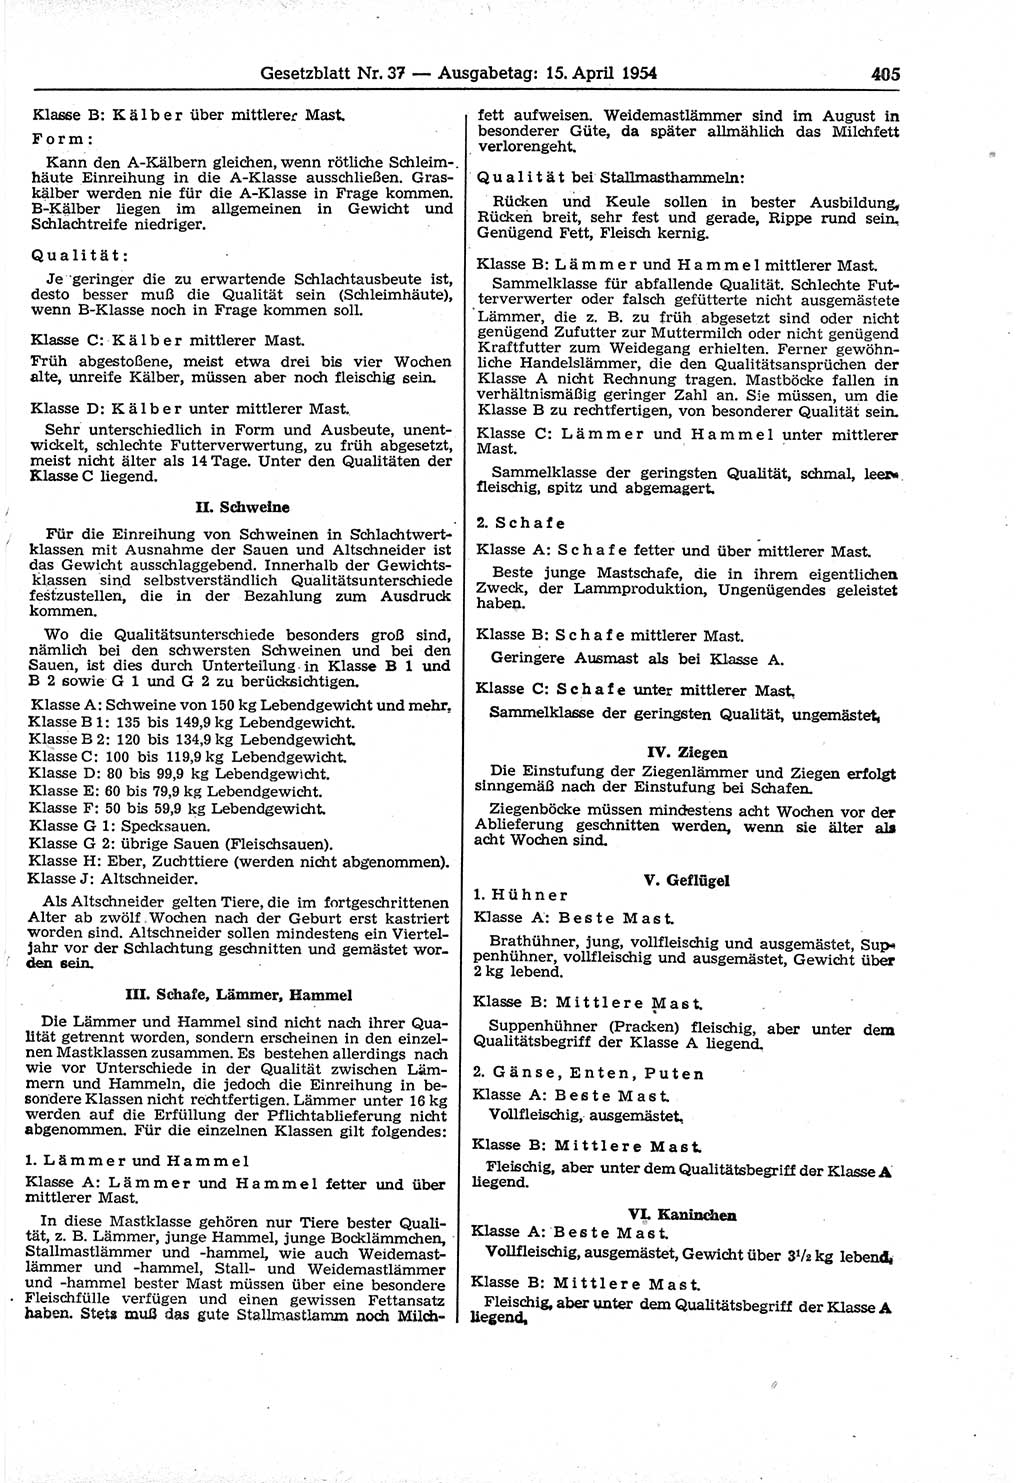 Gesetzblatt (GBl.) der Deutschen Demokratischen Republik (DDR) 1954, Seite 405 (GBl. DDR 1954, S. 405)